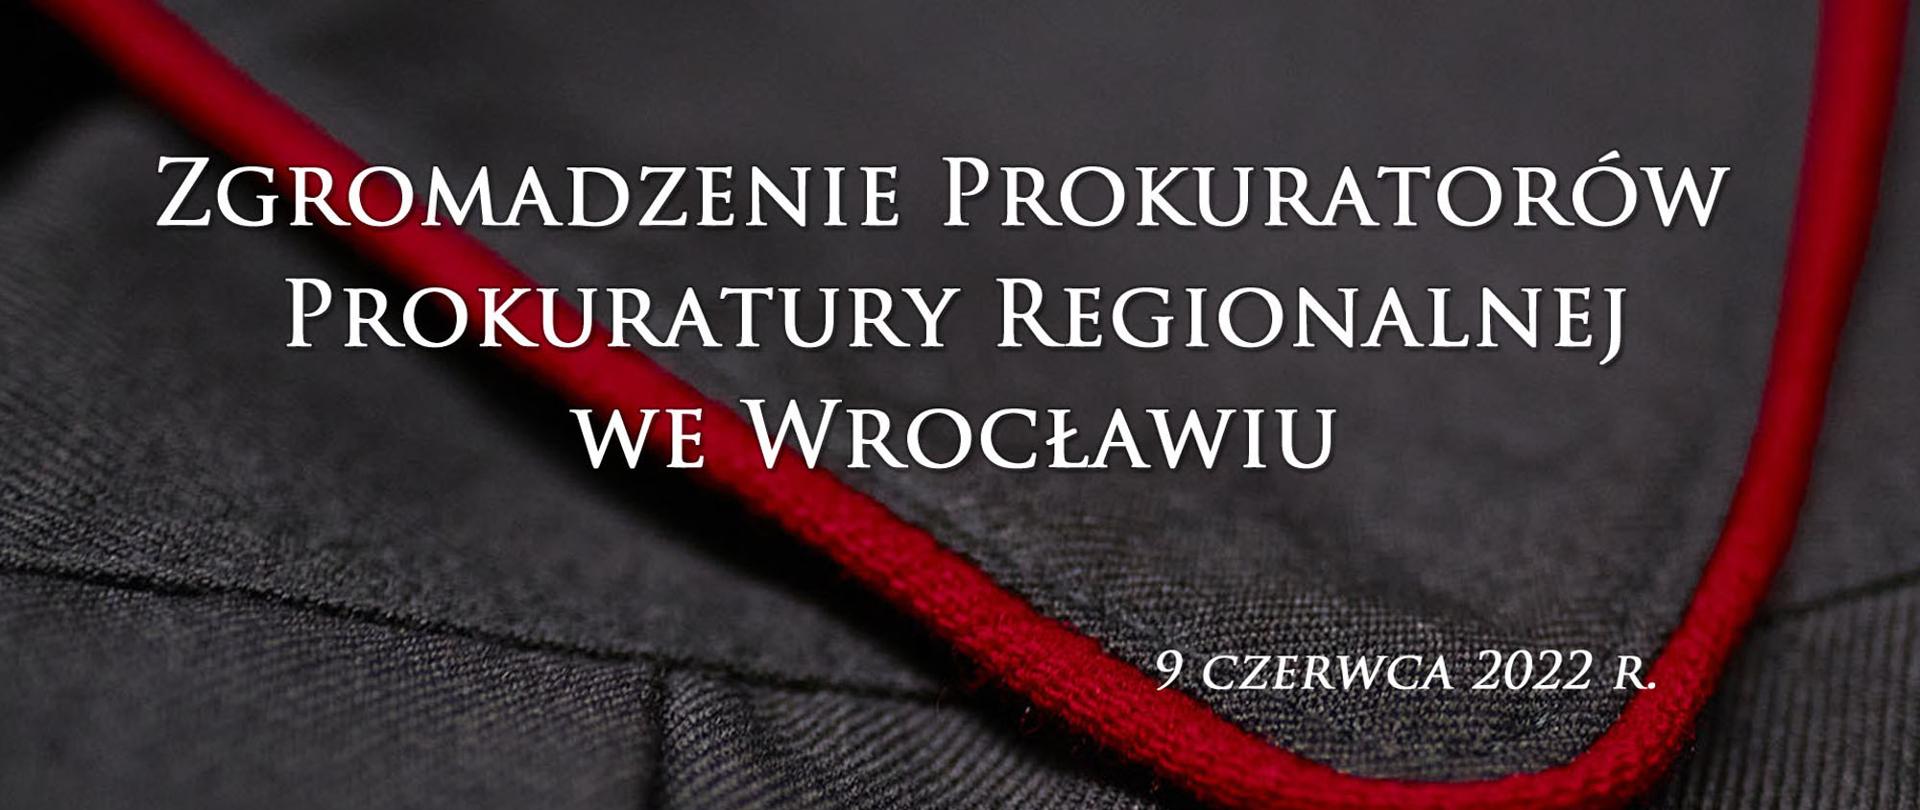 Plakat o Zgromadzeniu Prokuratorów Prokuratury Regionalnej we Wrocławiu